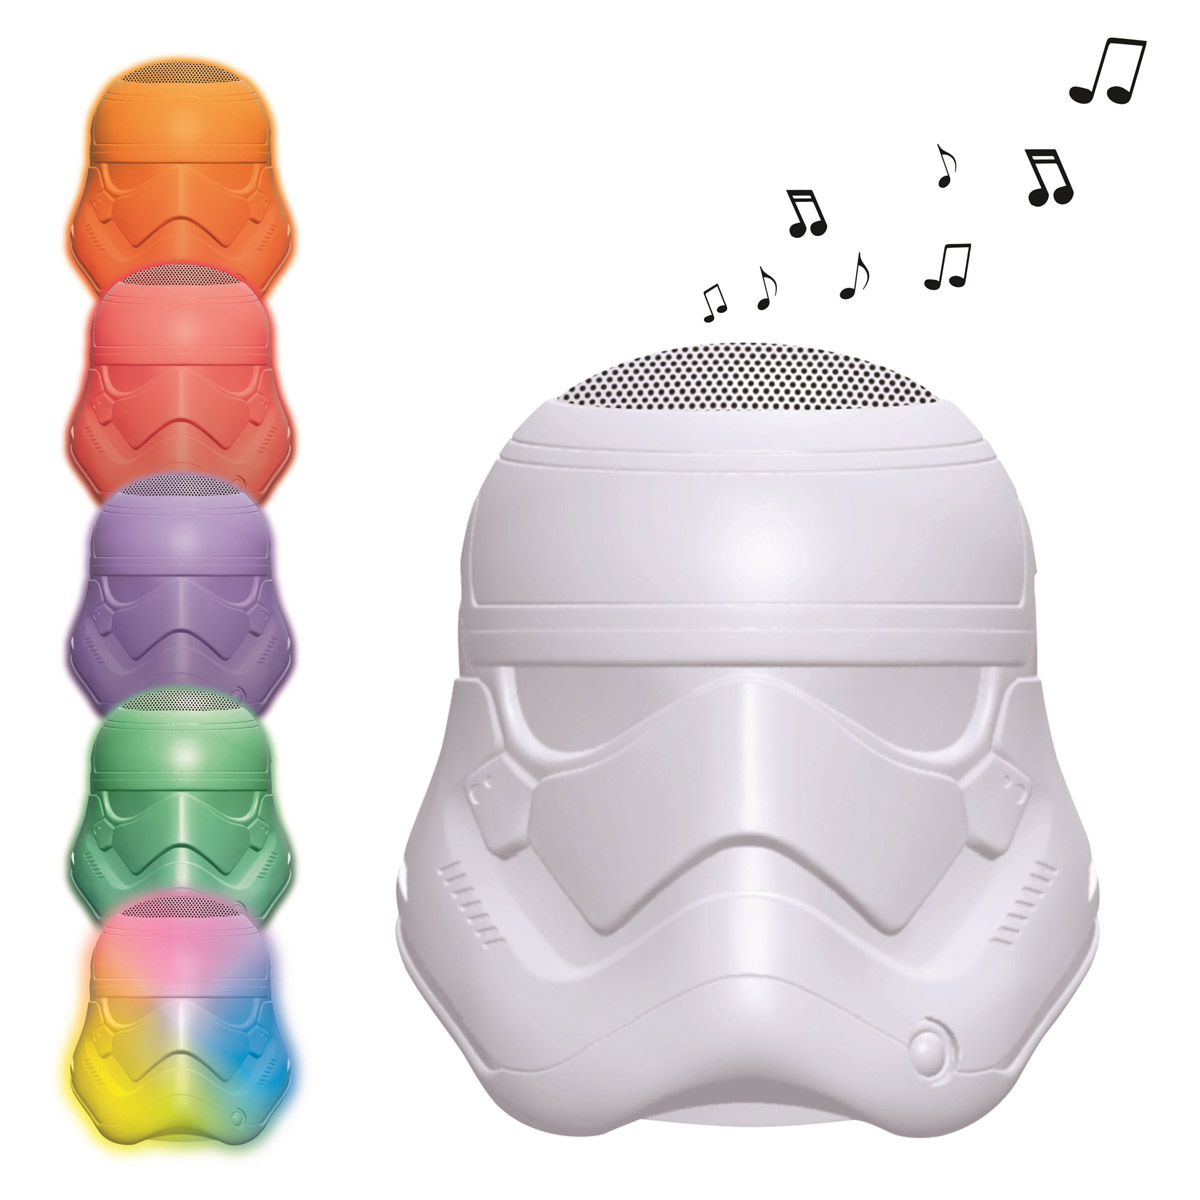  Stormtrooper Bluetooth Lichtlautsprecher, Star Wars, Farbwechsel